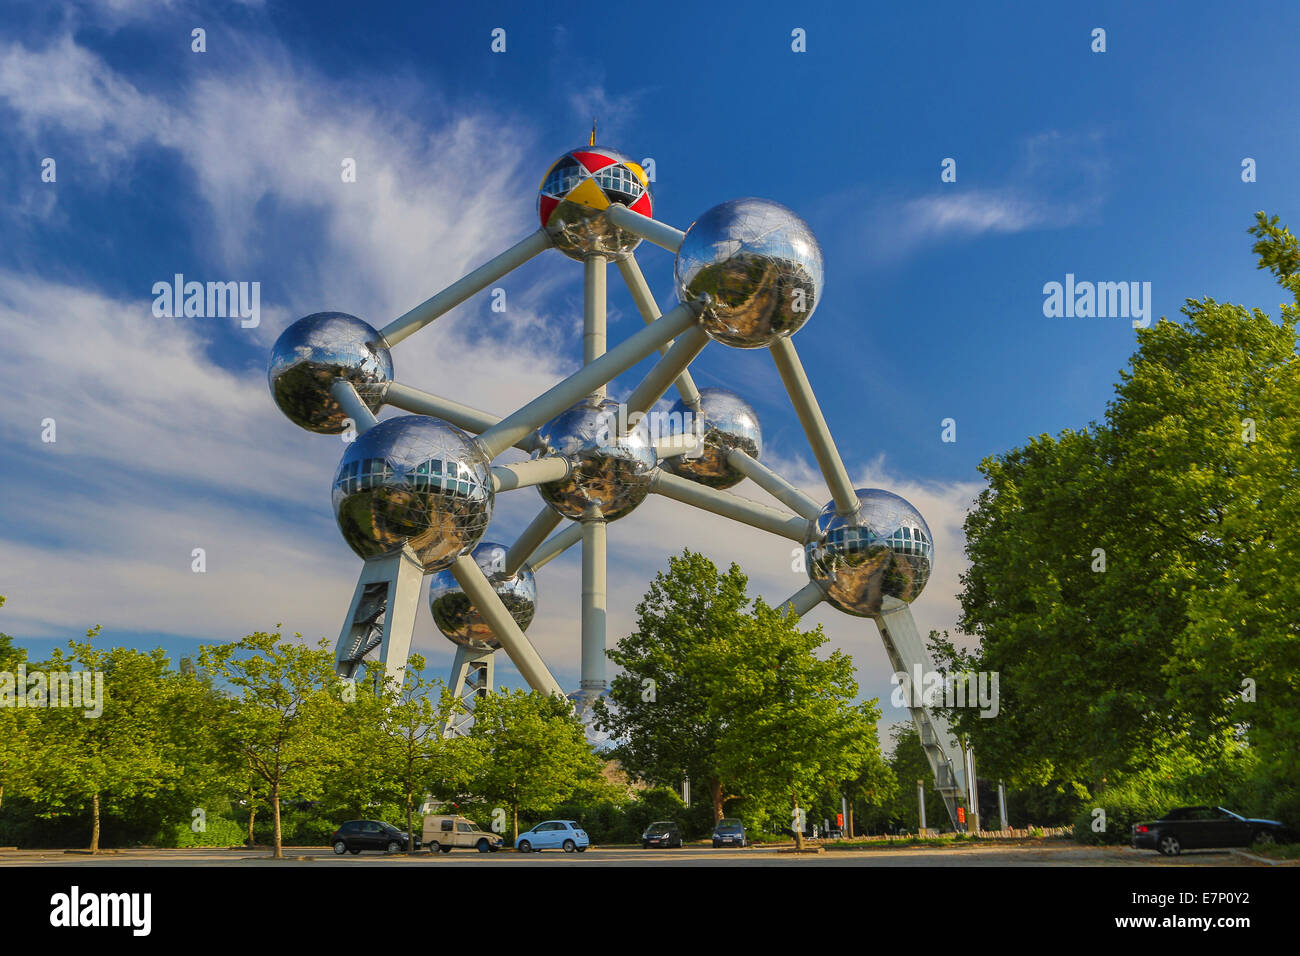 Atomium, sphères, Belgique, Europe, Bruxelles, architecture, ballons, ville, colorée, expo, célèbre, printemps, touristique, voyage Banque D'Images